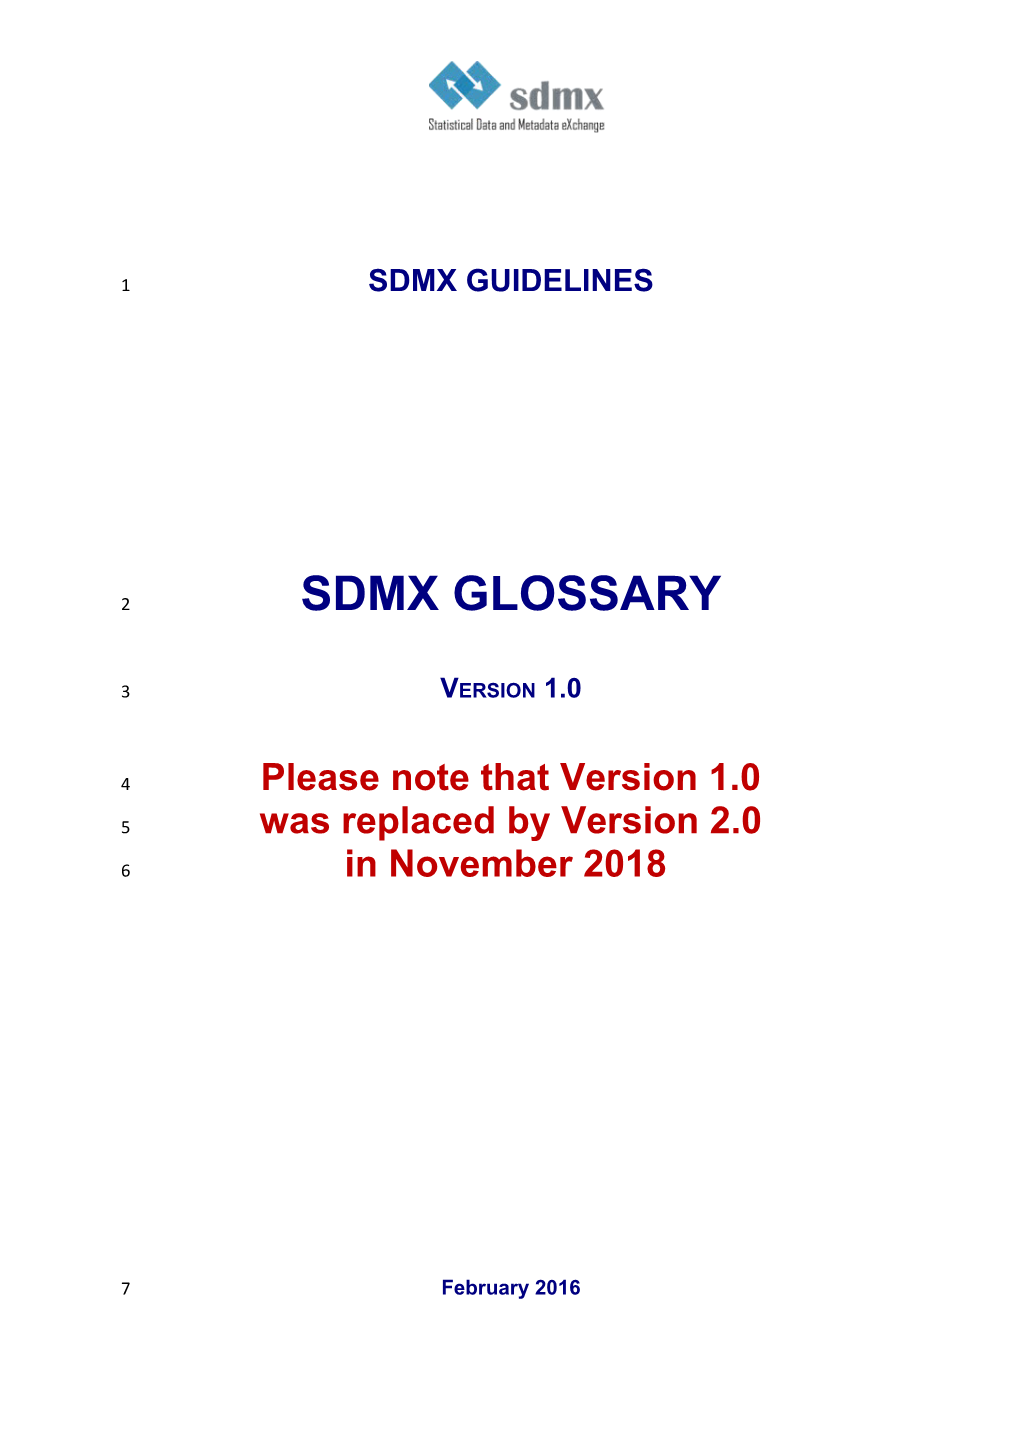 SDMX Guidelines